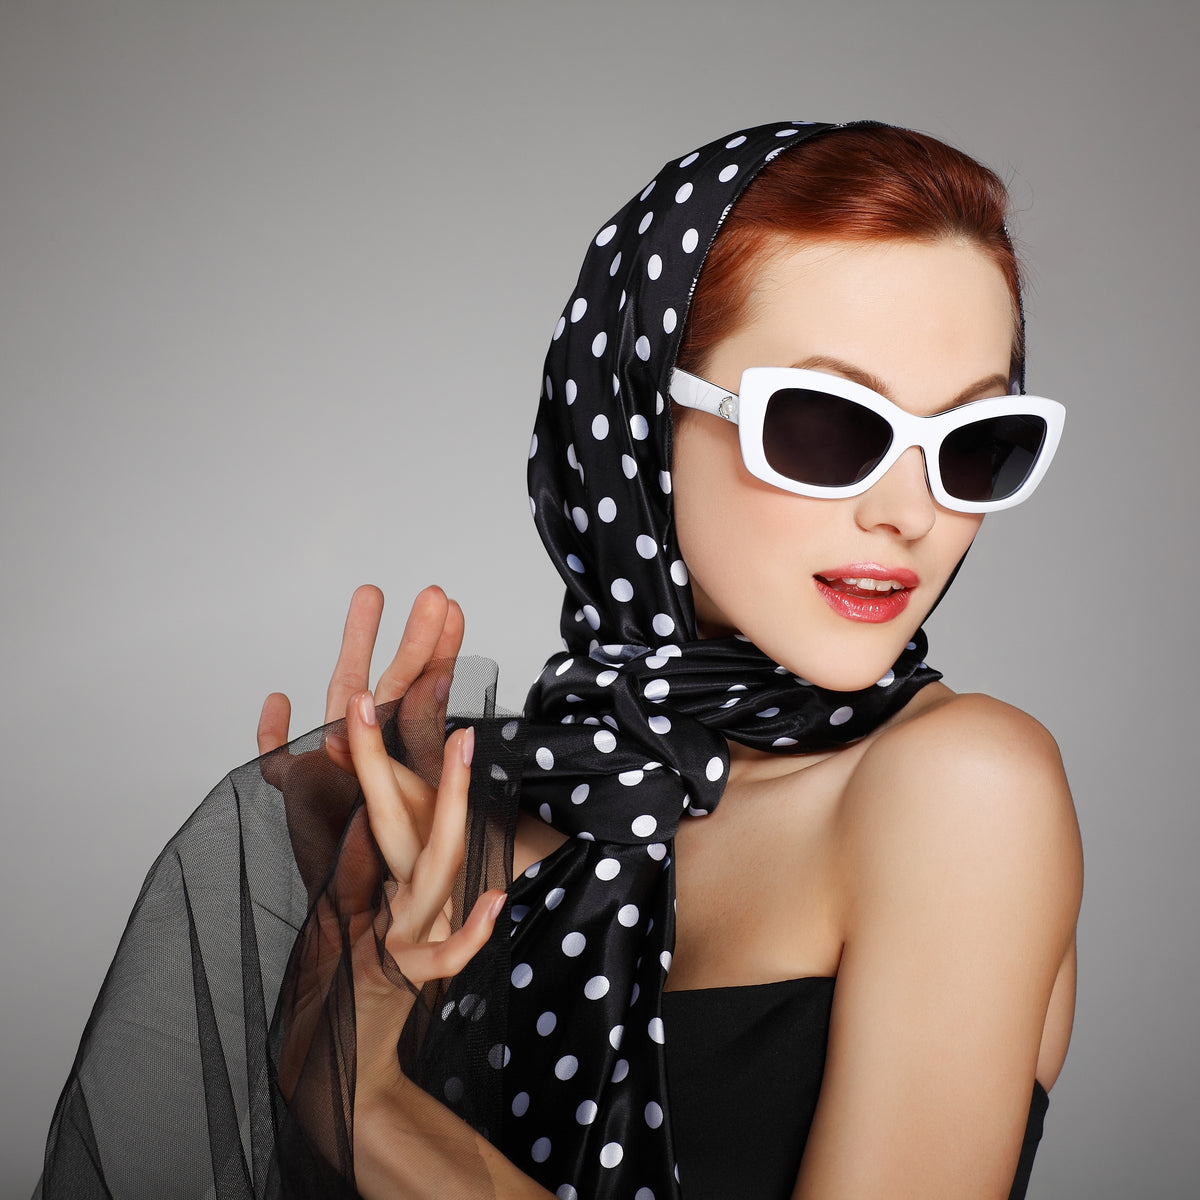 Red purple silk scarf designer fashion for women buy online